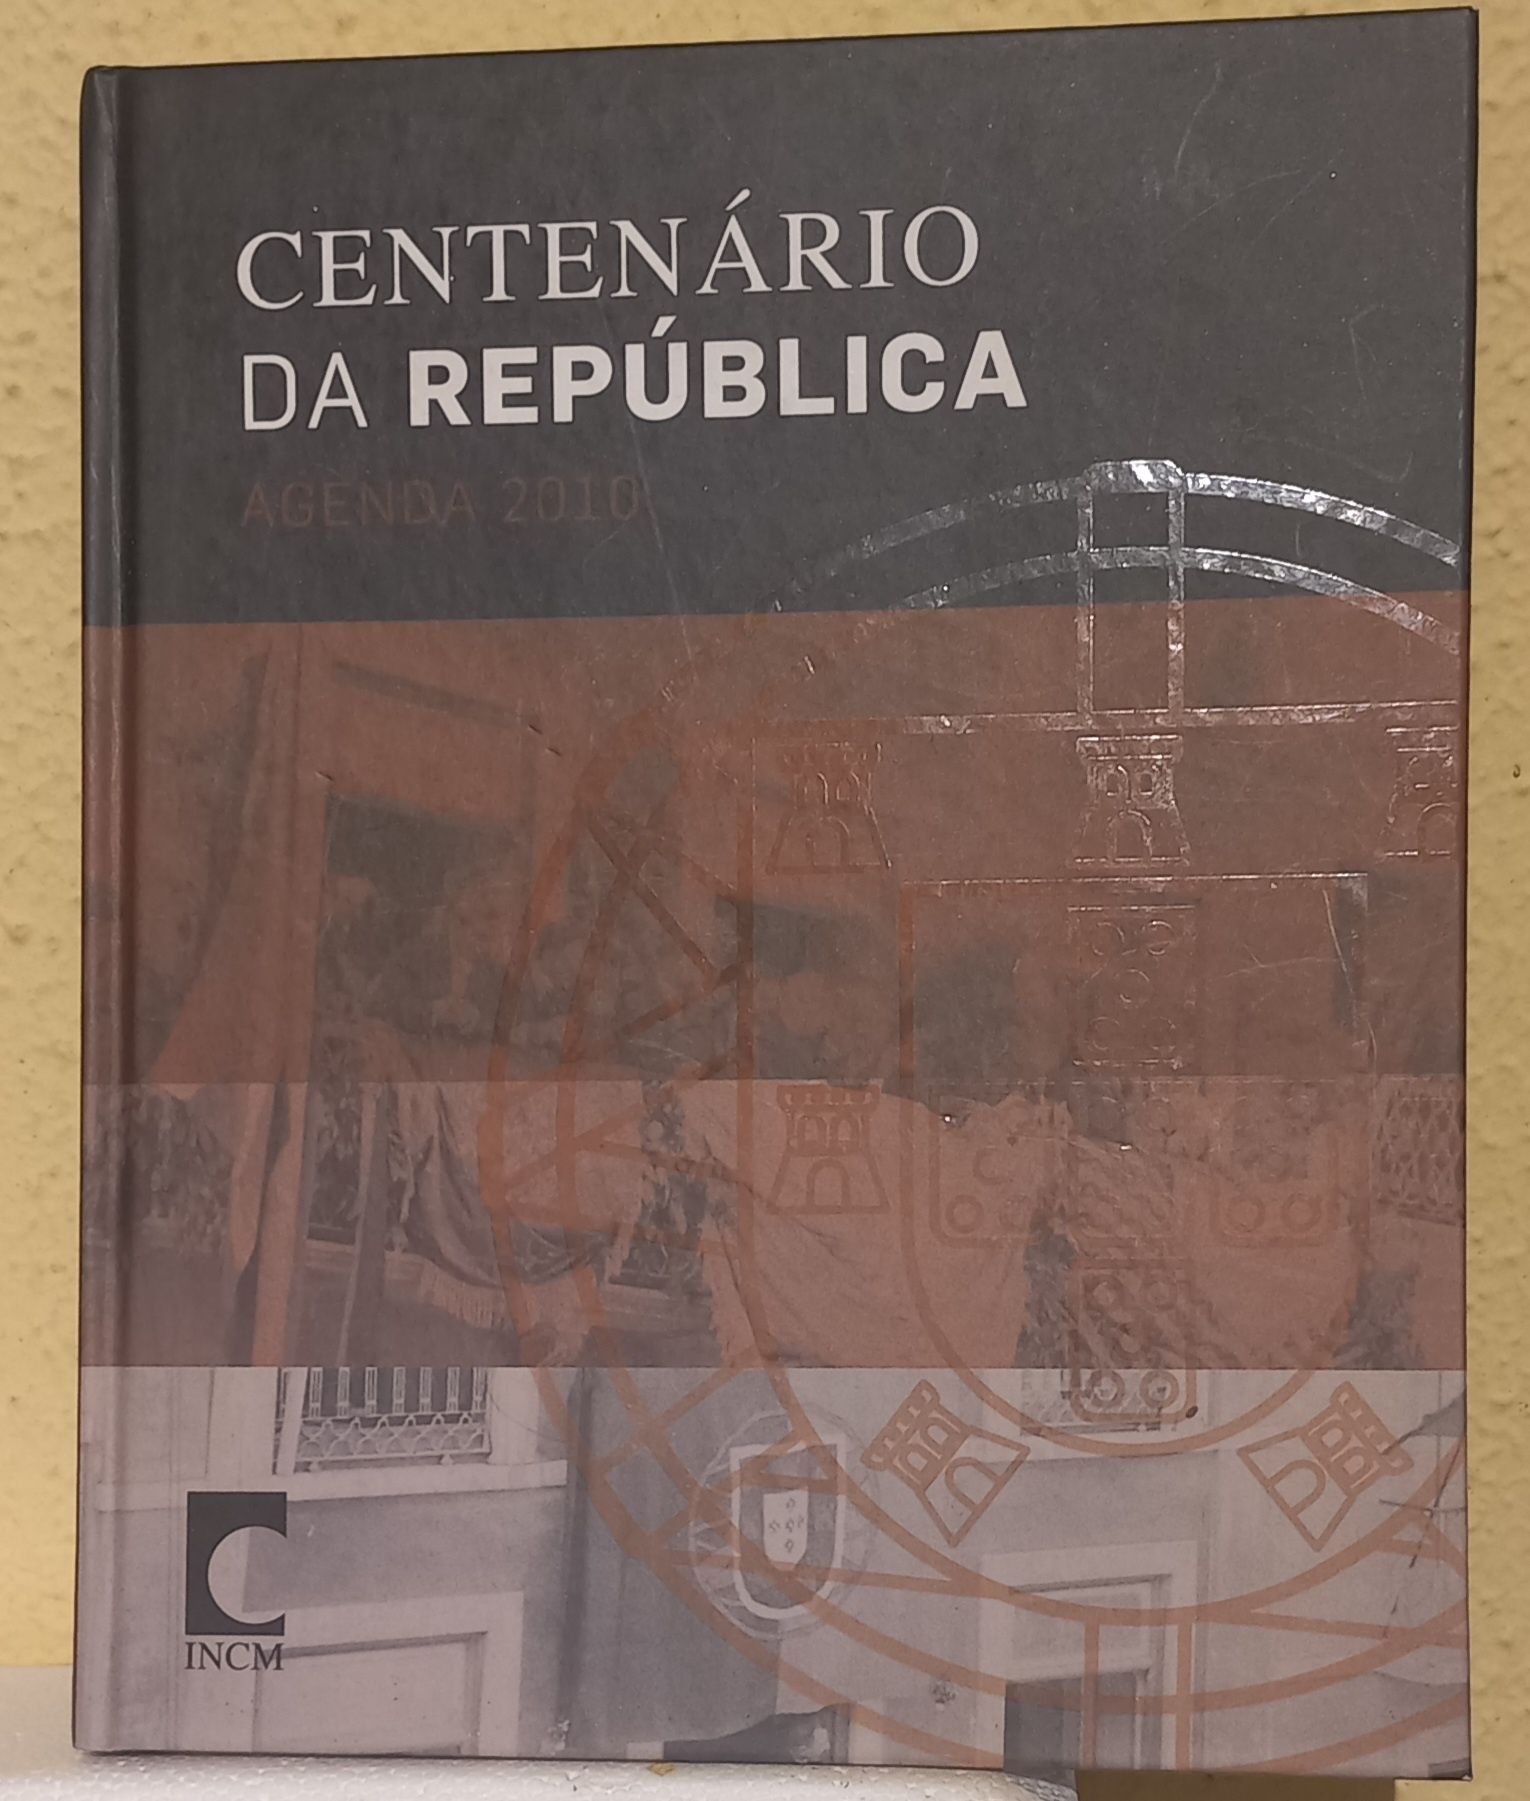 Agenda do centenário da República,  da INCM.